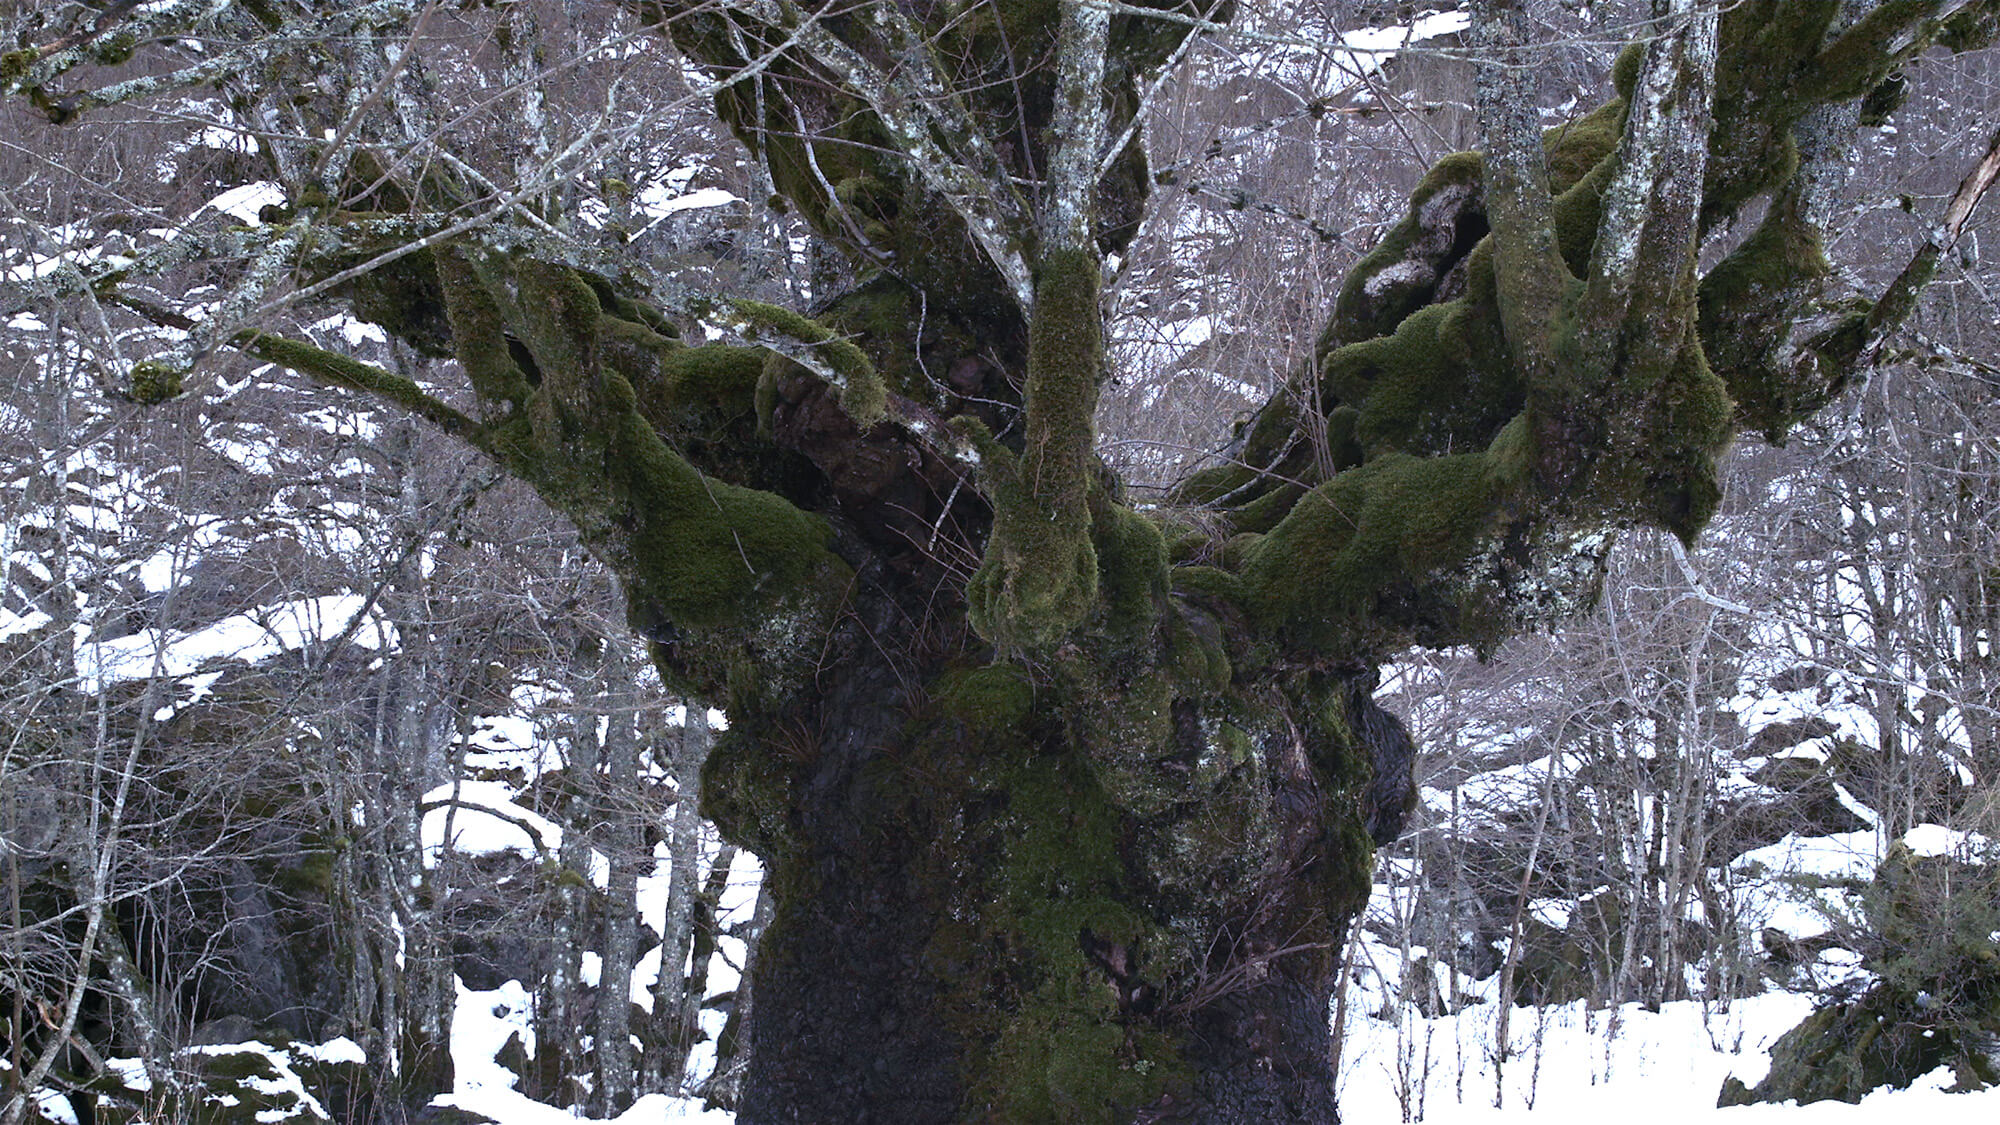 Huge tree in winter woods